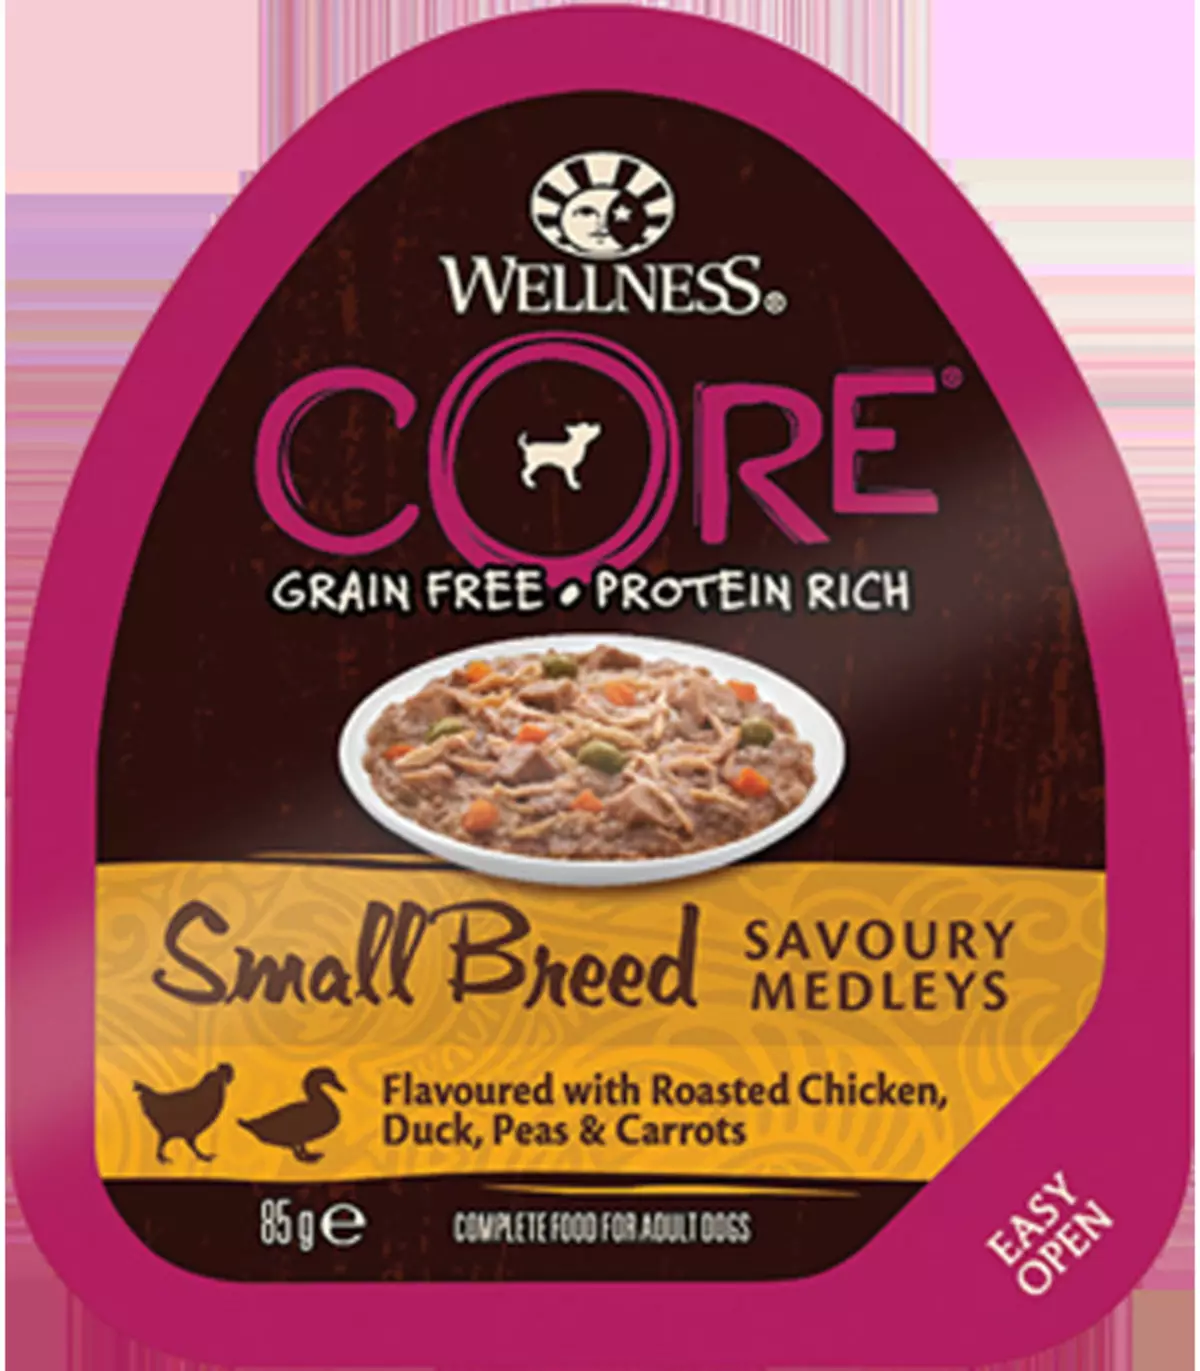 Core Wellness kanggo asu: komposisi, panganan kanggo anak anjing lan watu cilik, garing lan udan nganggo lamb, spesies liyane 22132_23